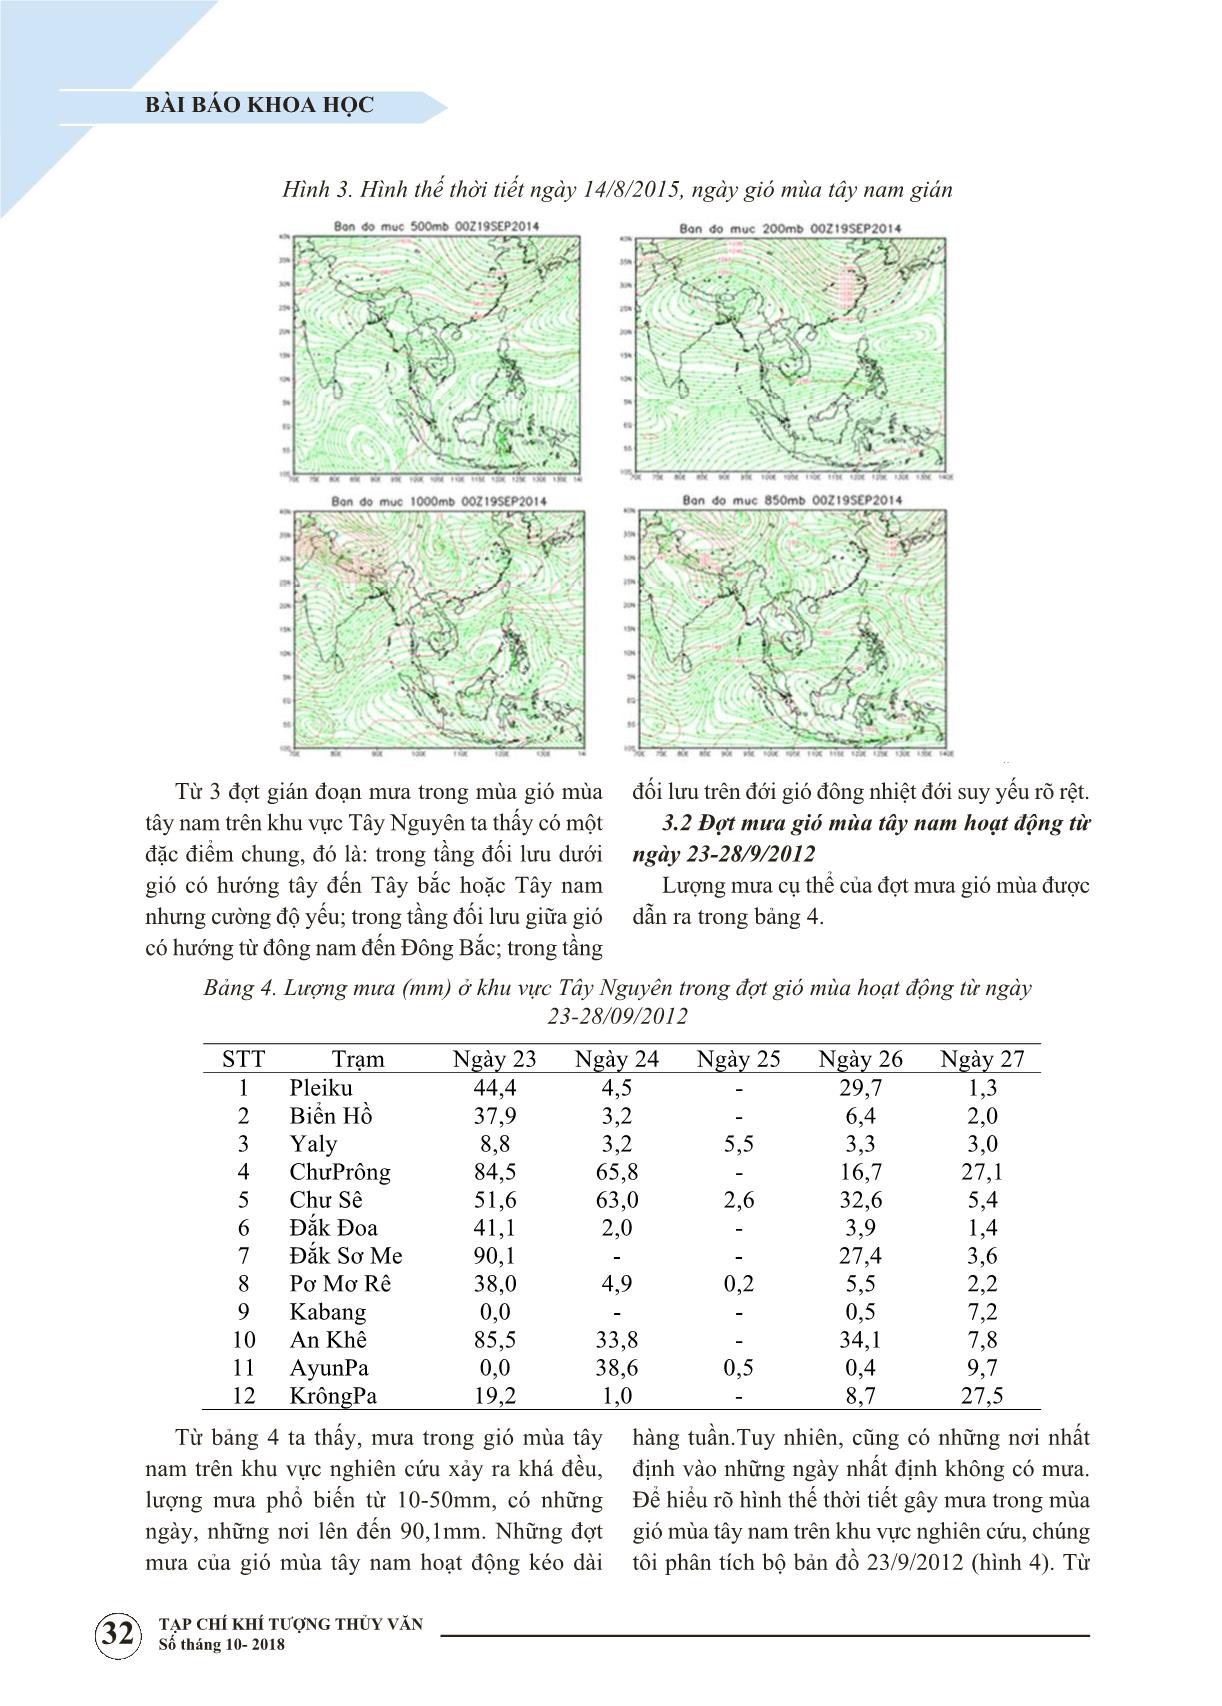 Nghiên cứu xác định hình thế thời tiết gây gián đoạn mưa trong mùa gió mùa Tây Nam ở Tây Nguyên trang 5